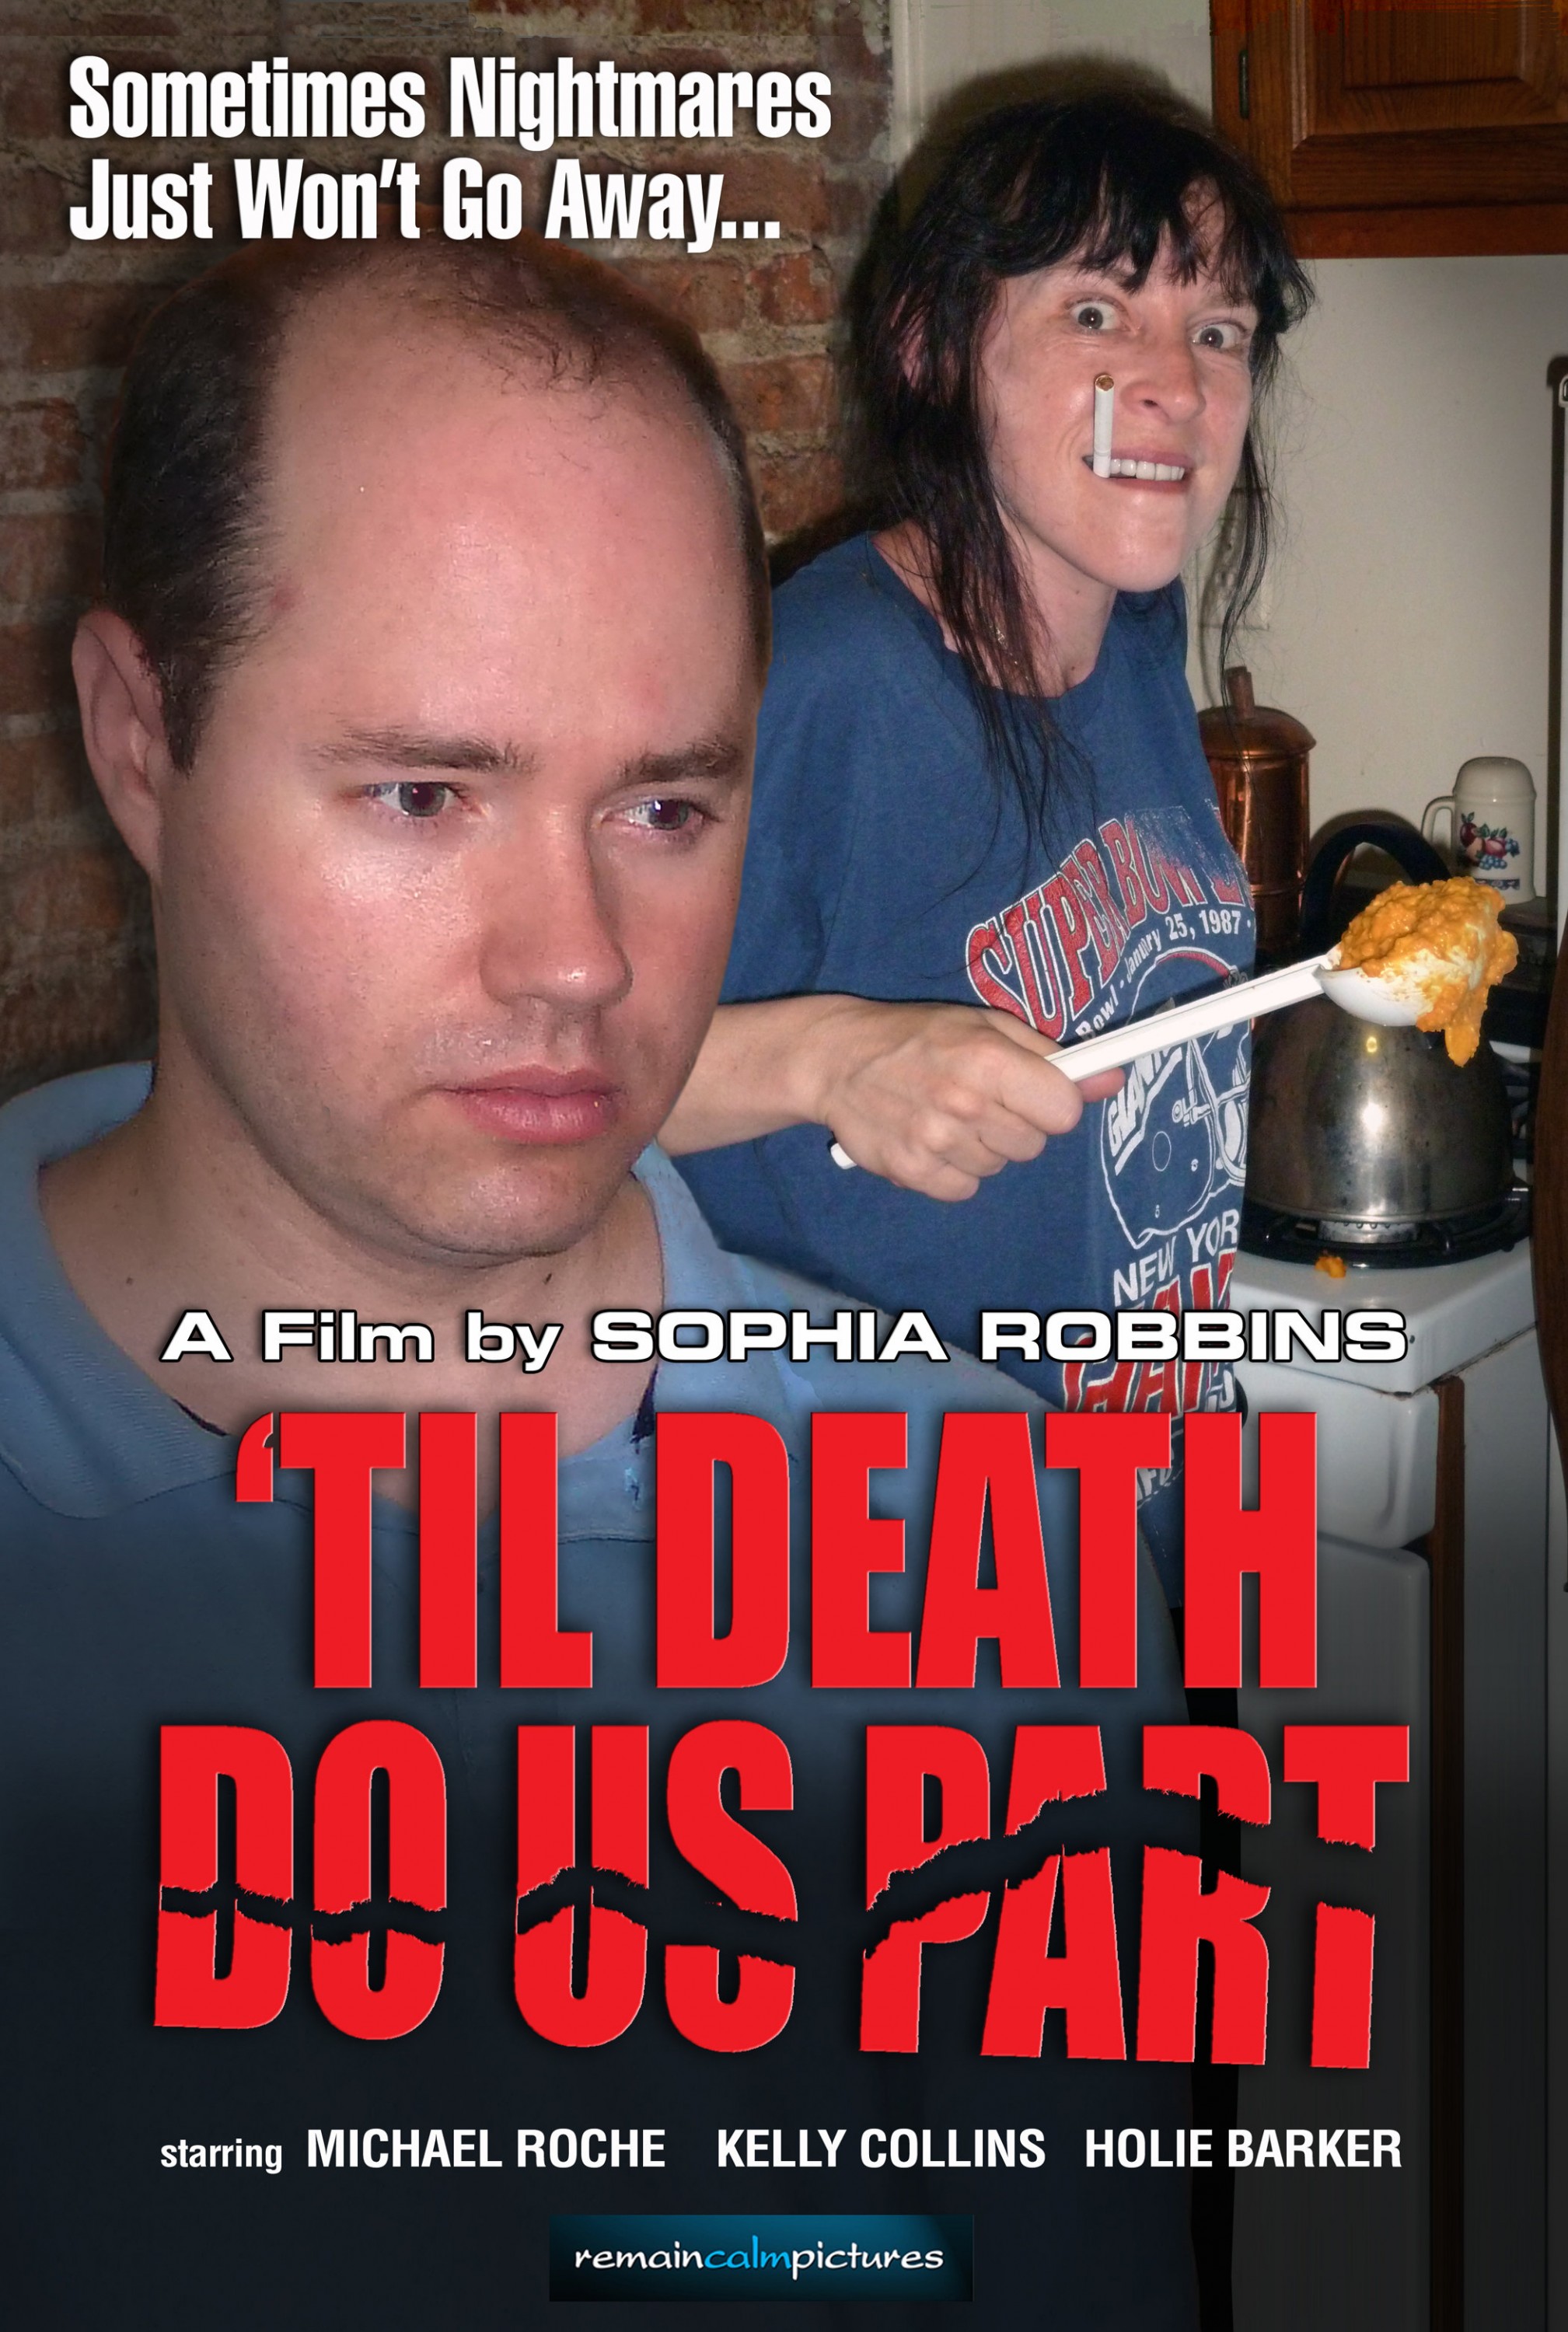 Mega Sized Movie Poster Image for 'Til Death Do Us Part